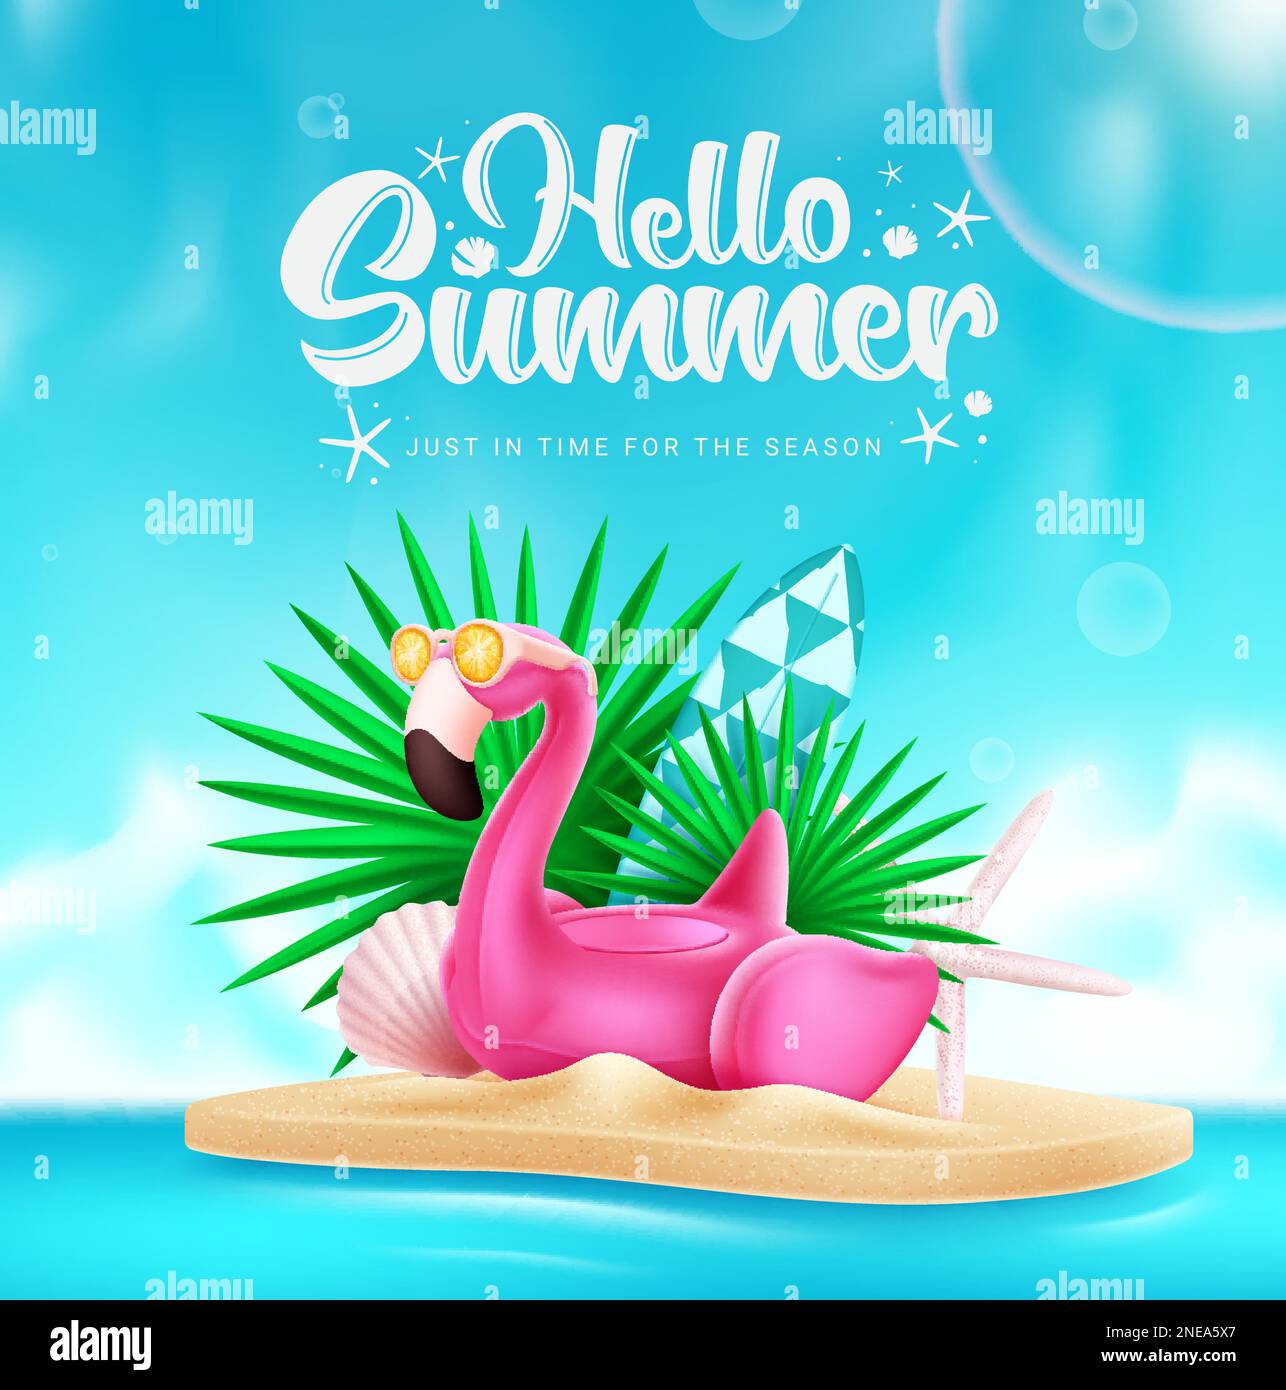 Hello summer vector design. Hello summer text with flamingo beach ...